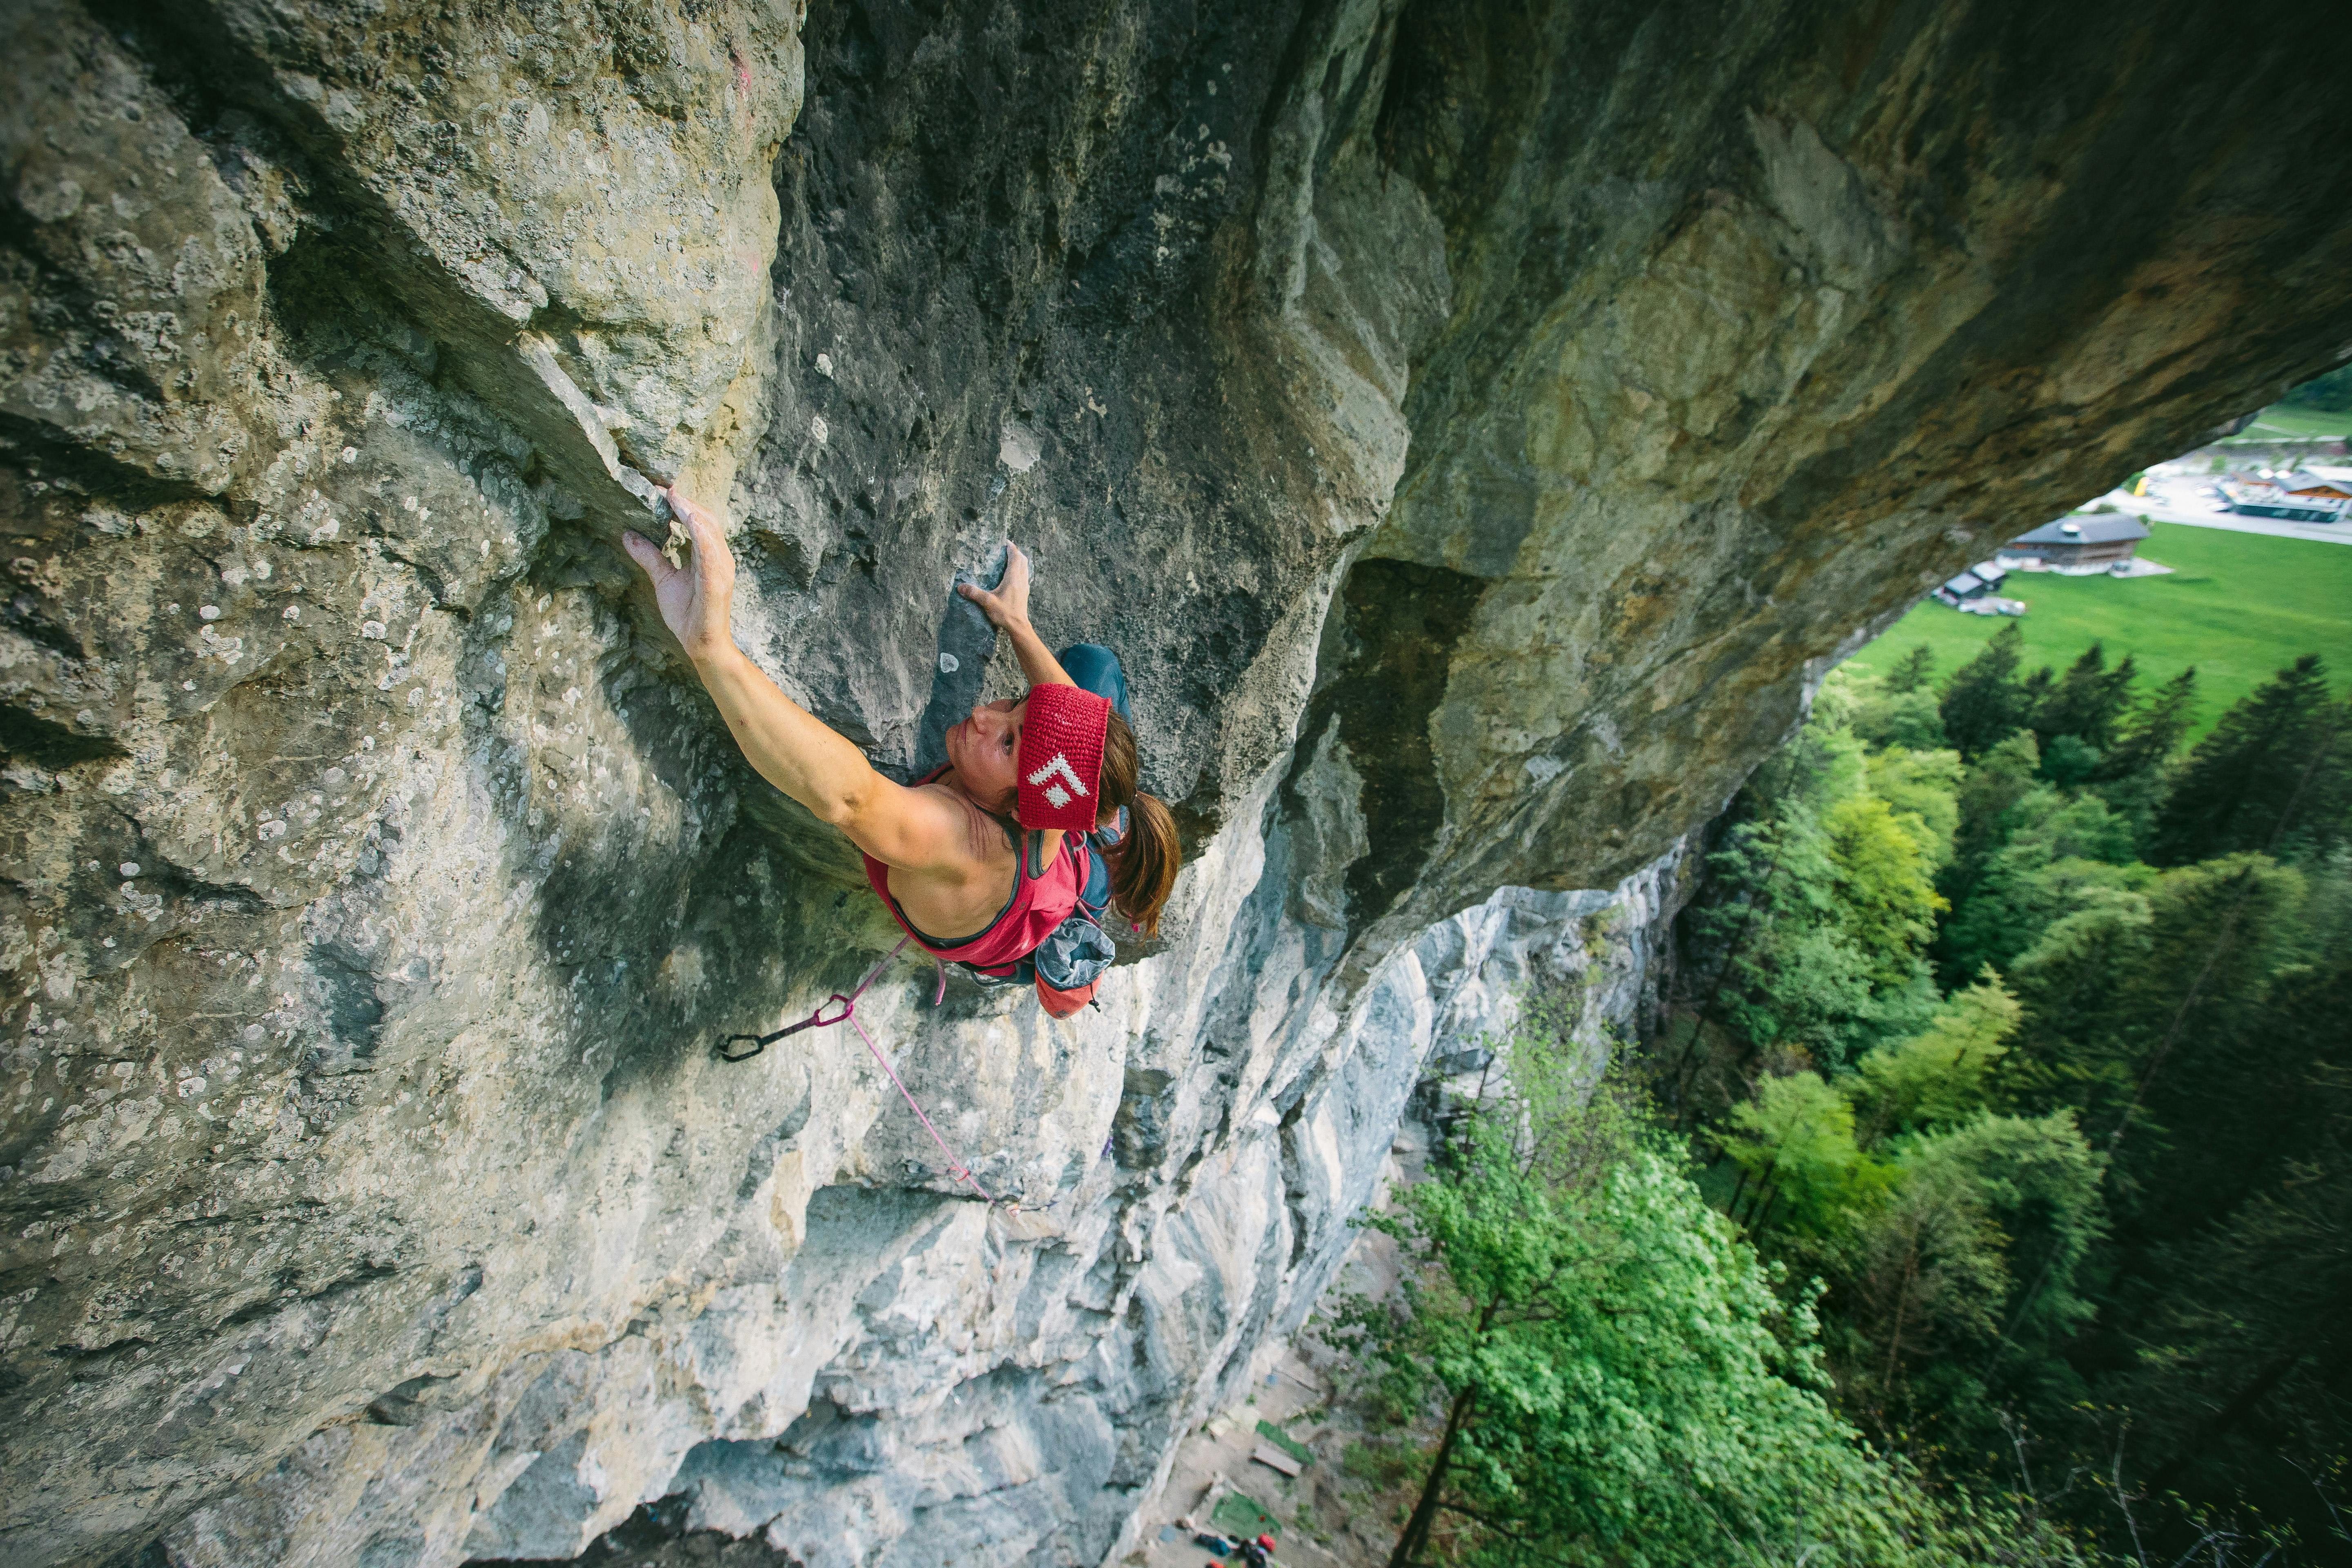 Babsi Zangerl sport climbing outdoors